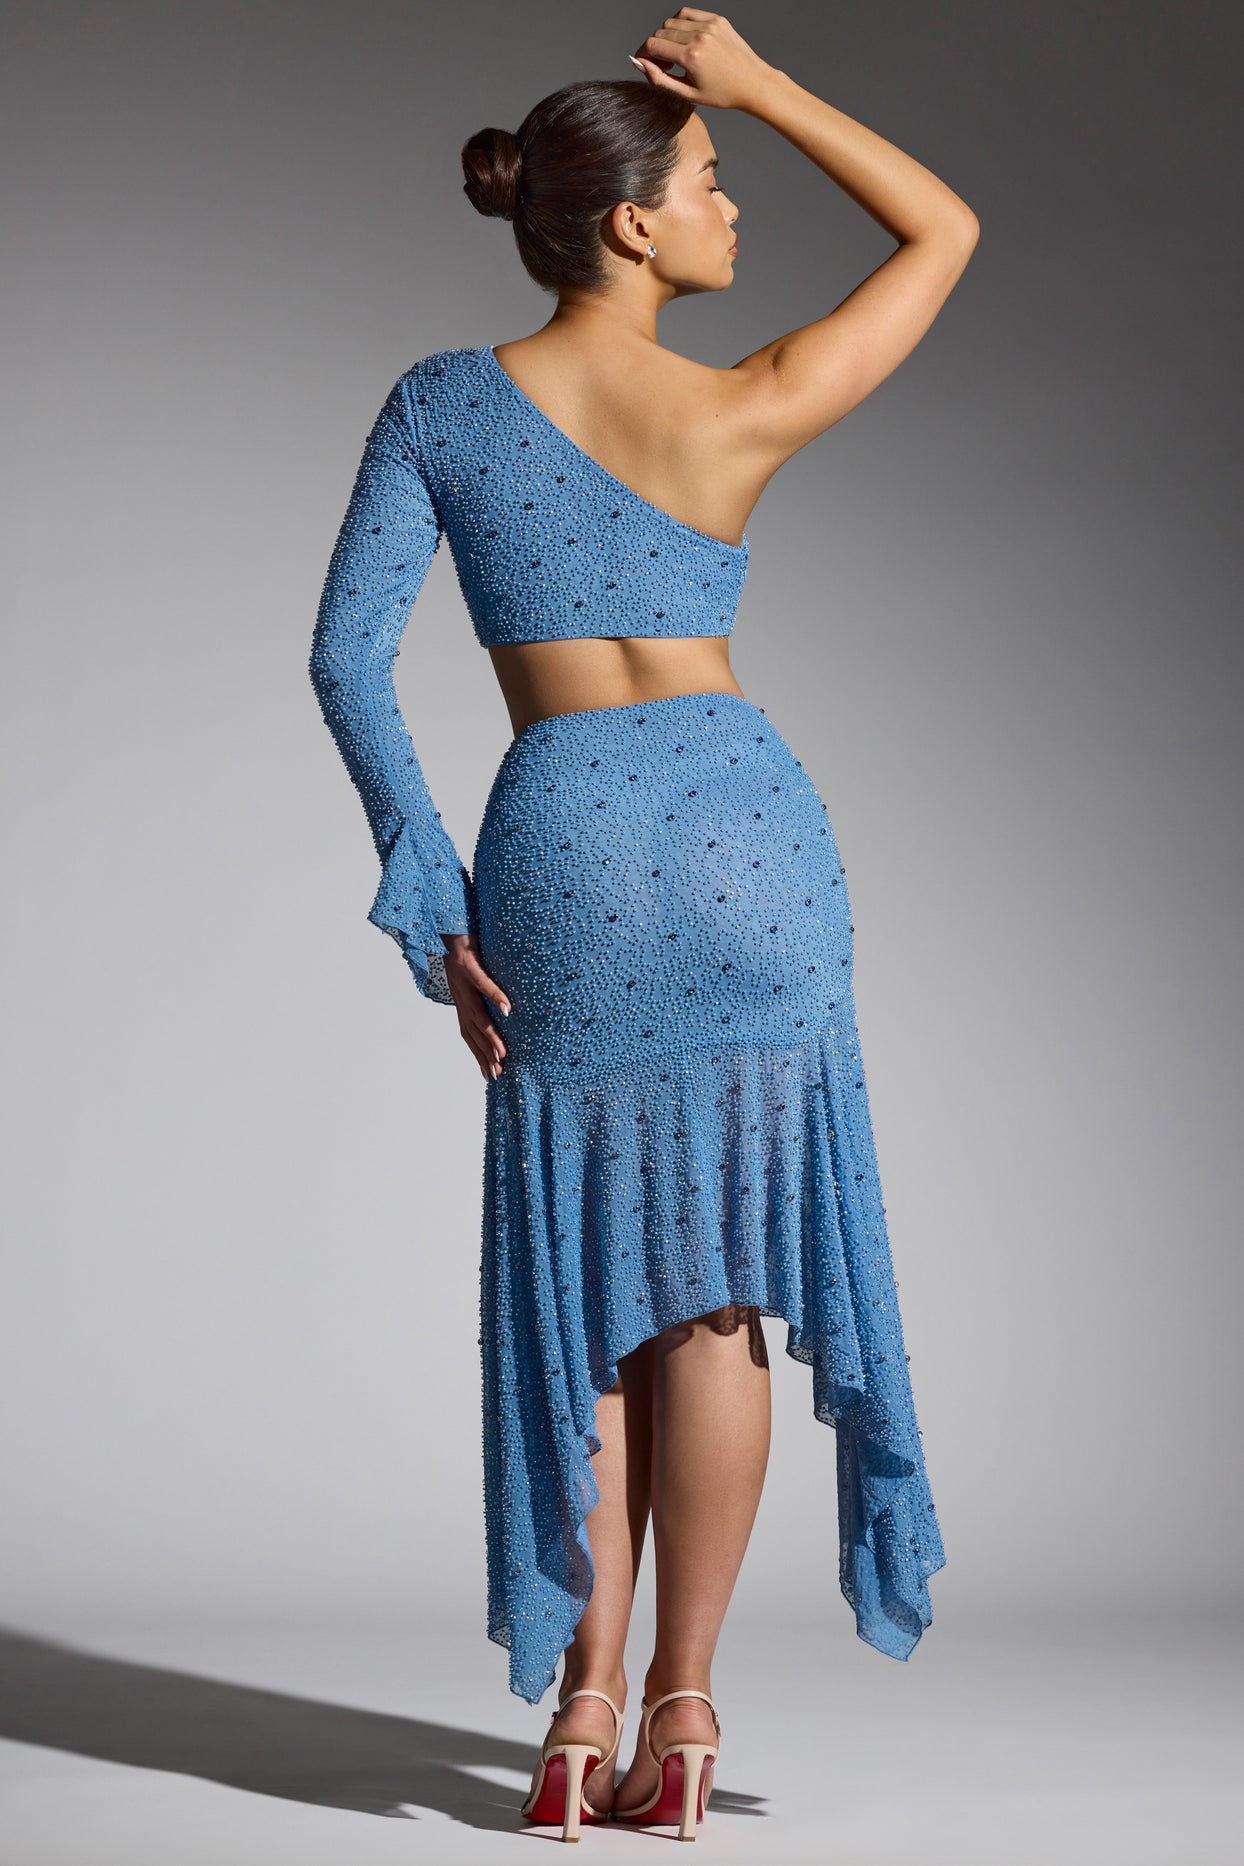 Spódnica sukniowa z ozdobnym dołem w kształcie chusteczki w kolorze smokey blue